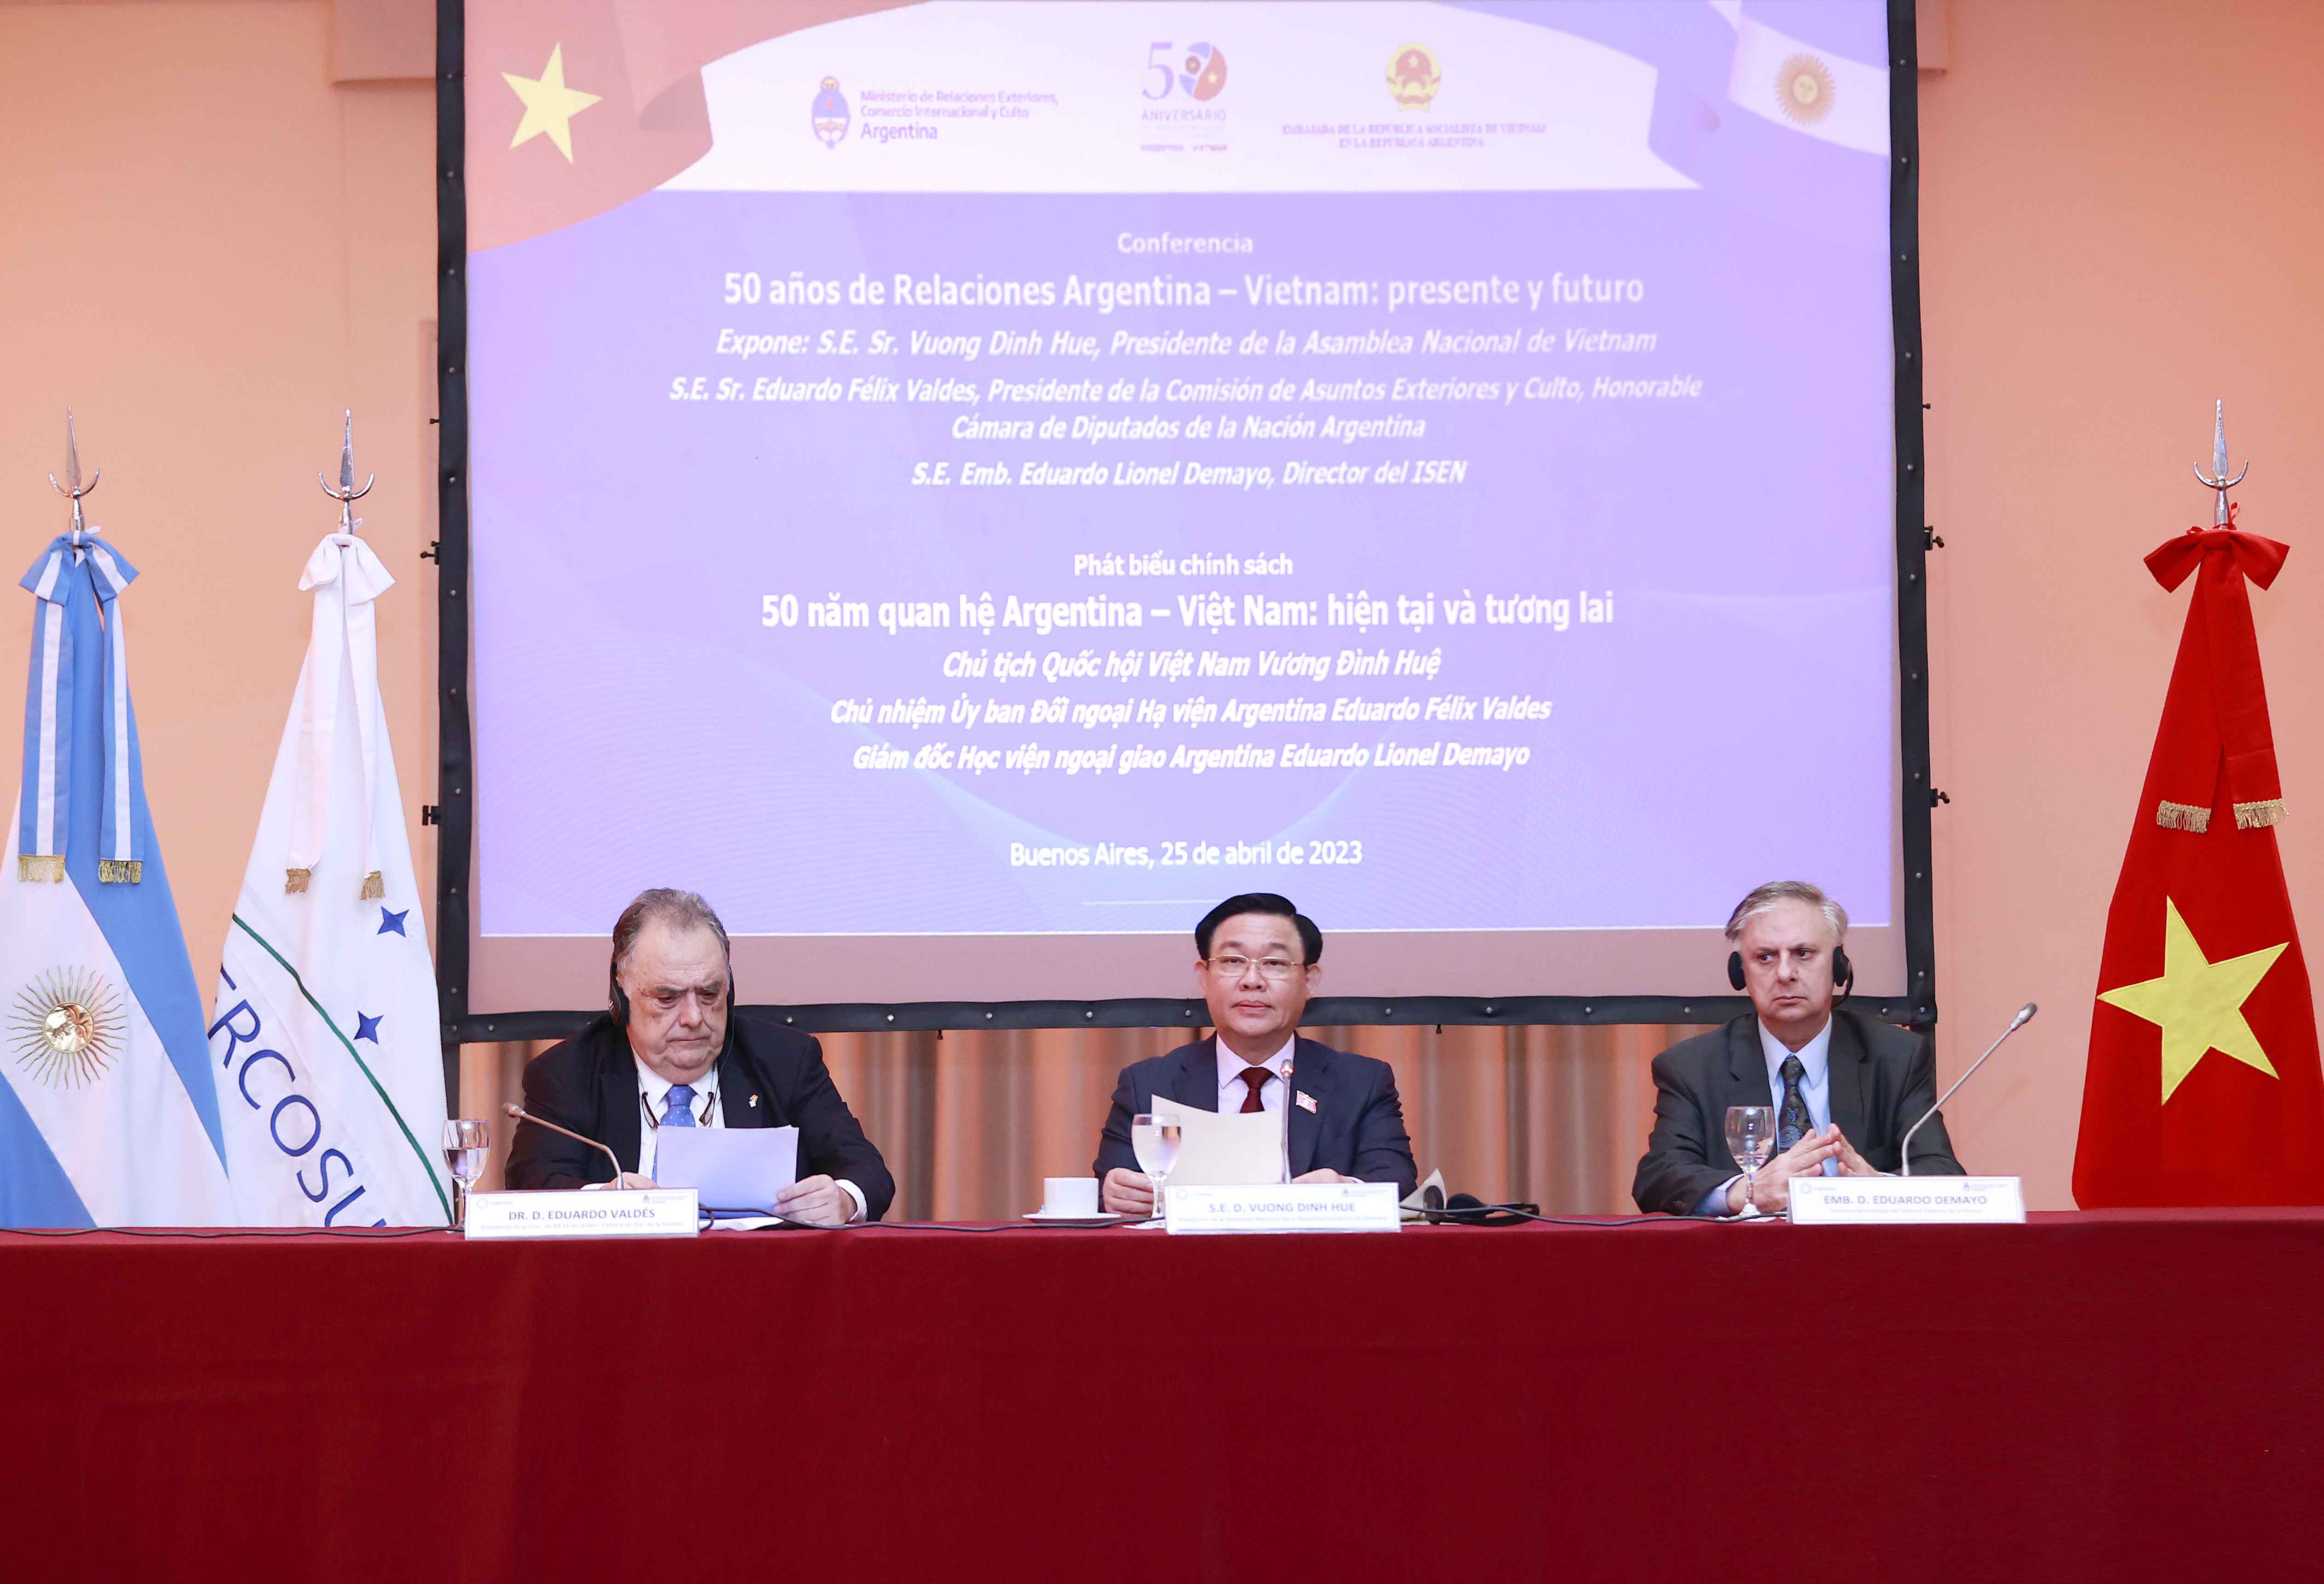 Chủ tịch Quốc hội Vương Đình Huệ phát biểu tại sự kiện kỷ niệm “50 năm quan hệ Việt Nam - Argentina: Hiện tại và tương lai”.